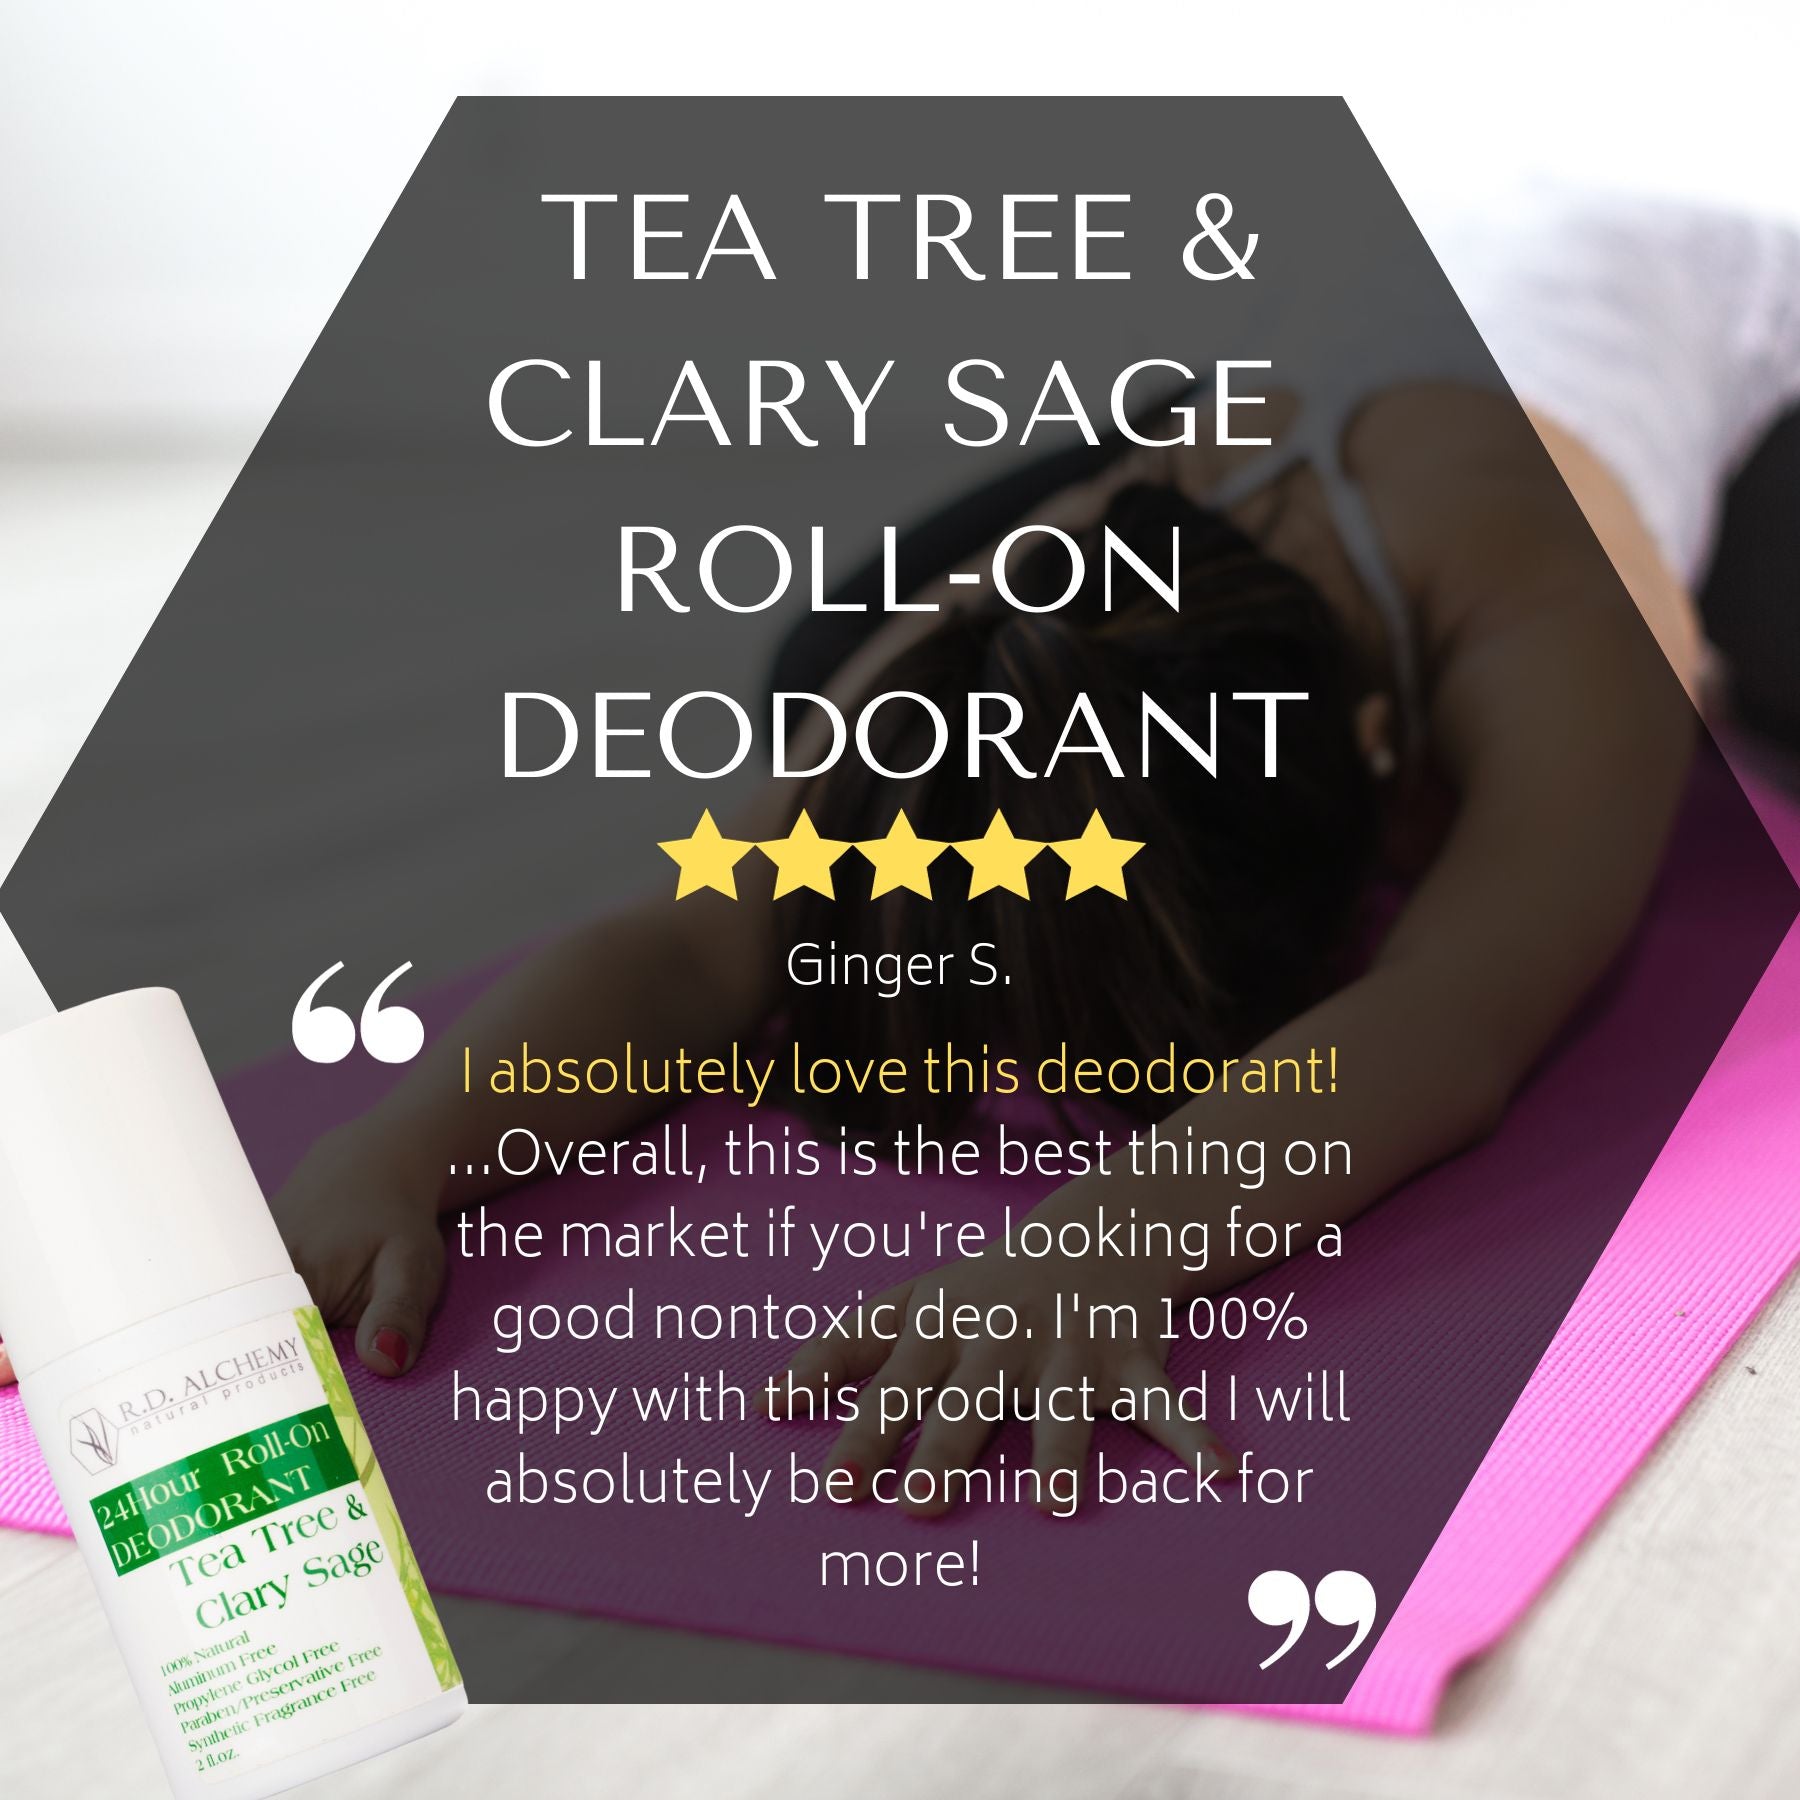 Tea tree & clary sage deodorant